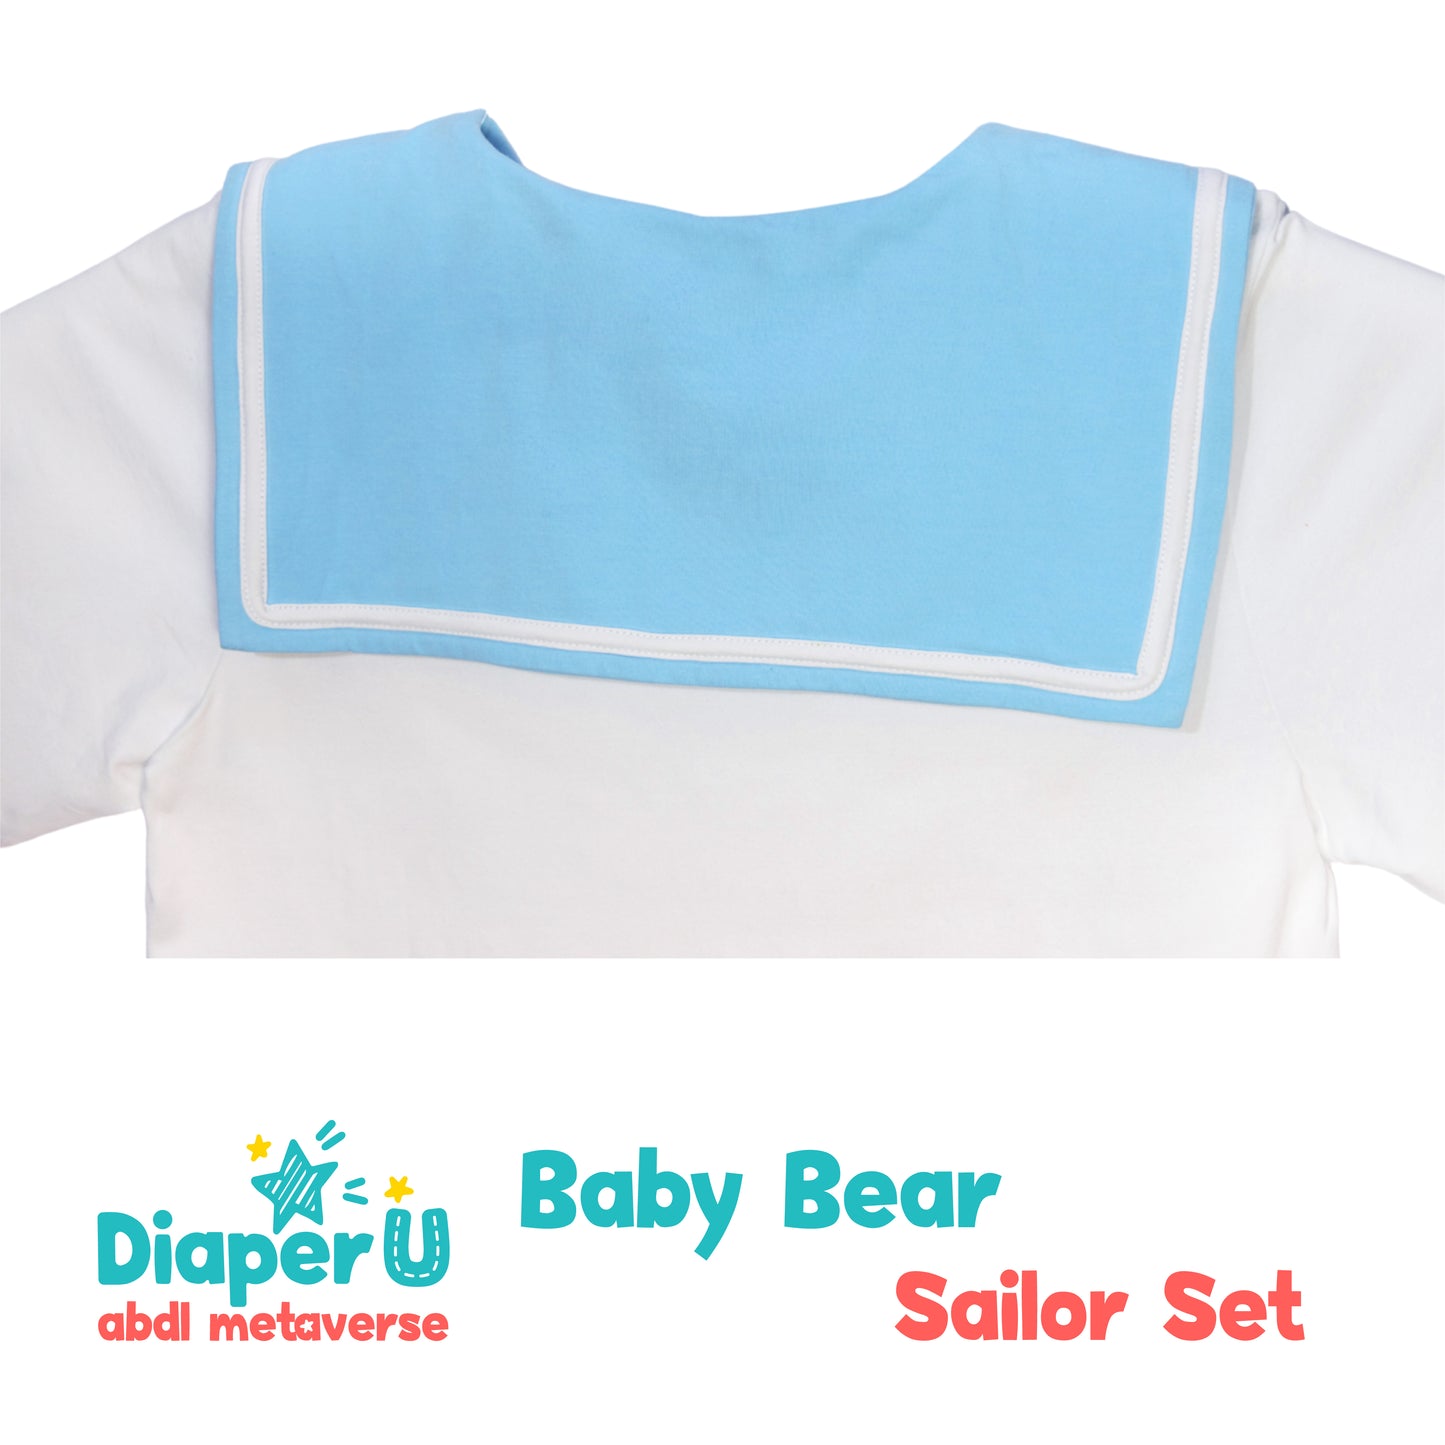 Baby Bear Sailor Play Shirt